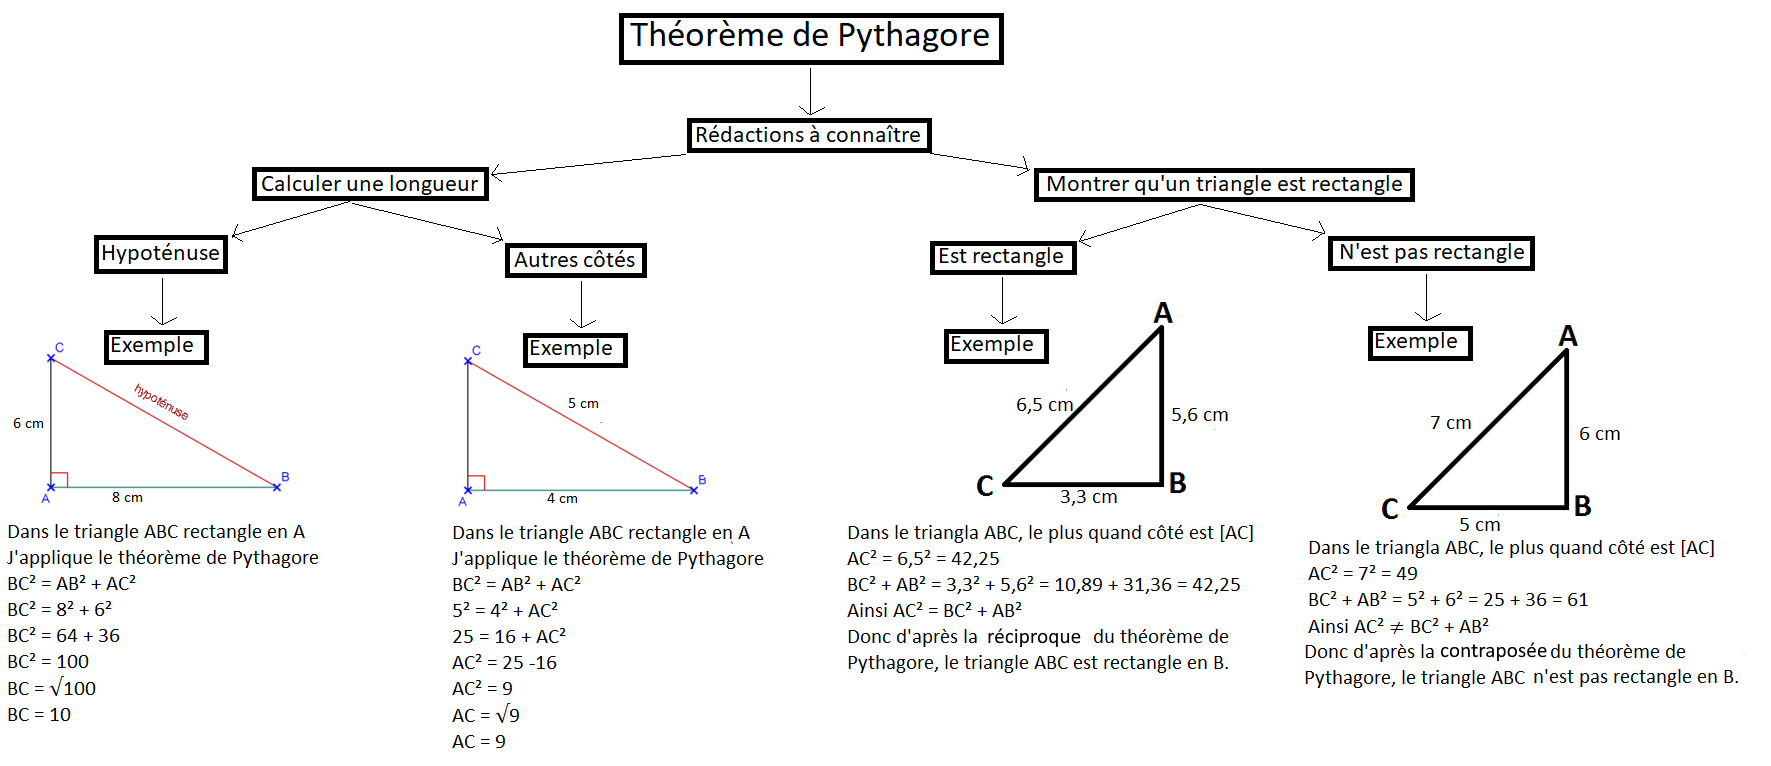 Pythagore